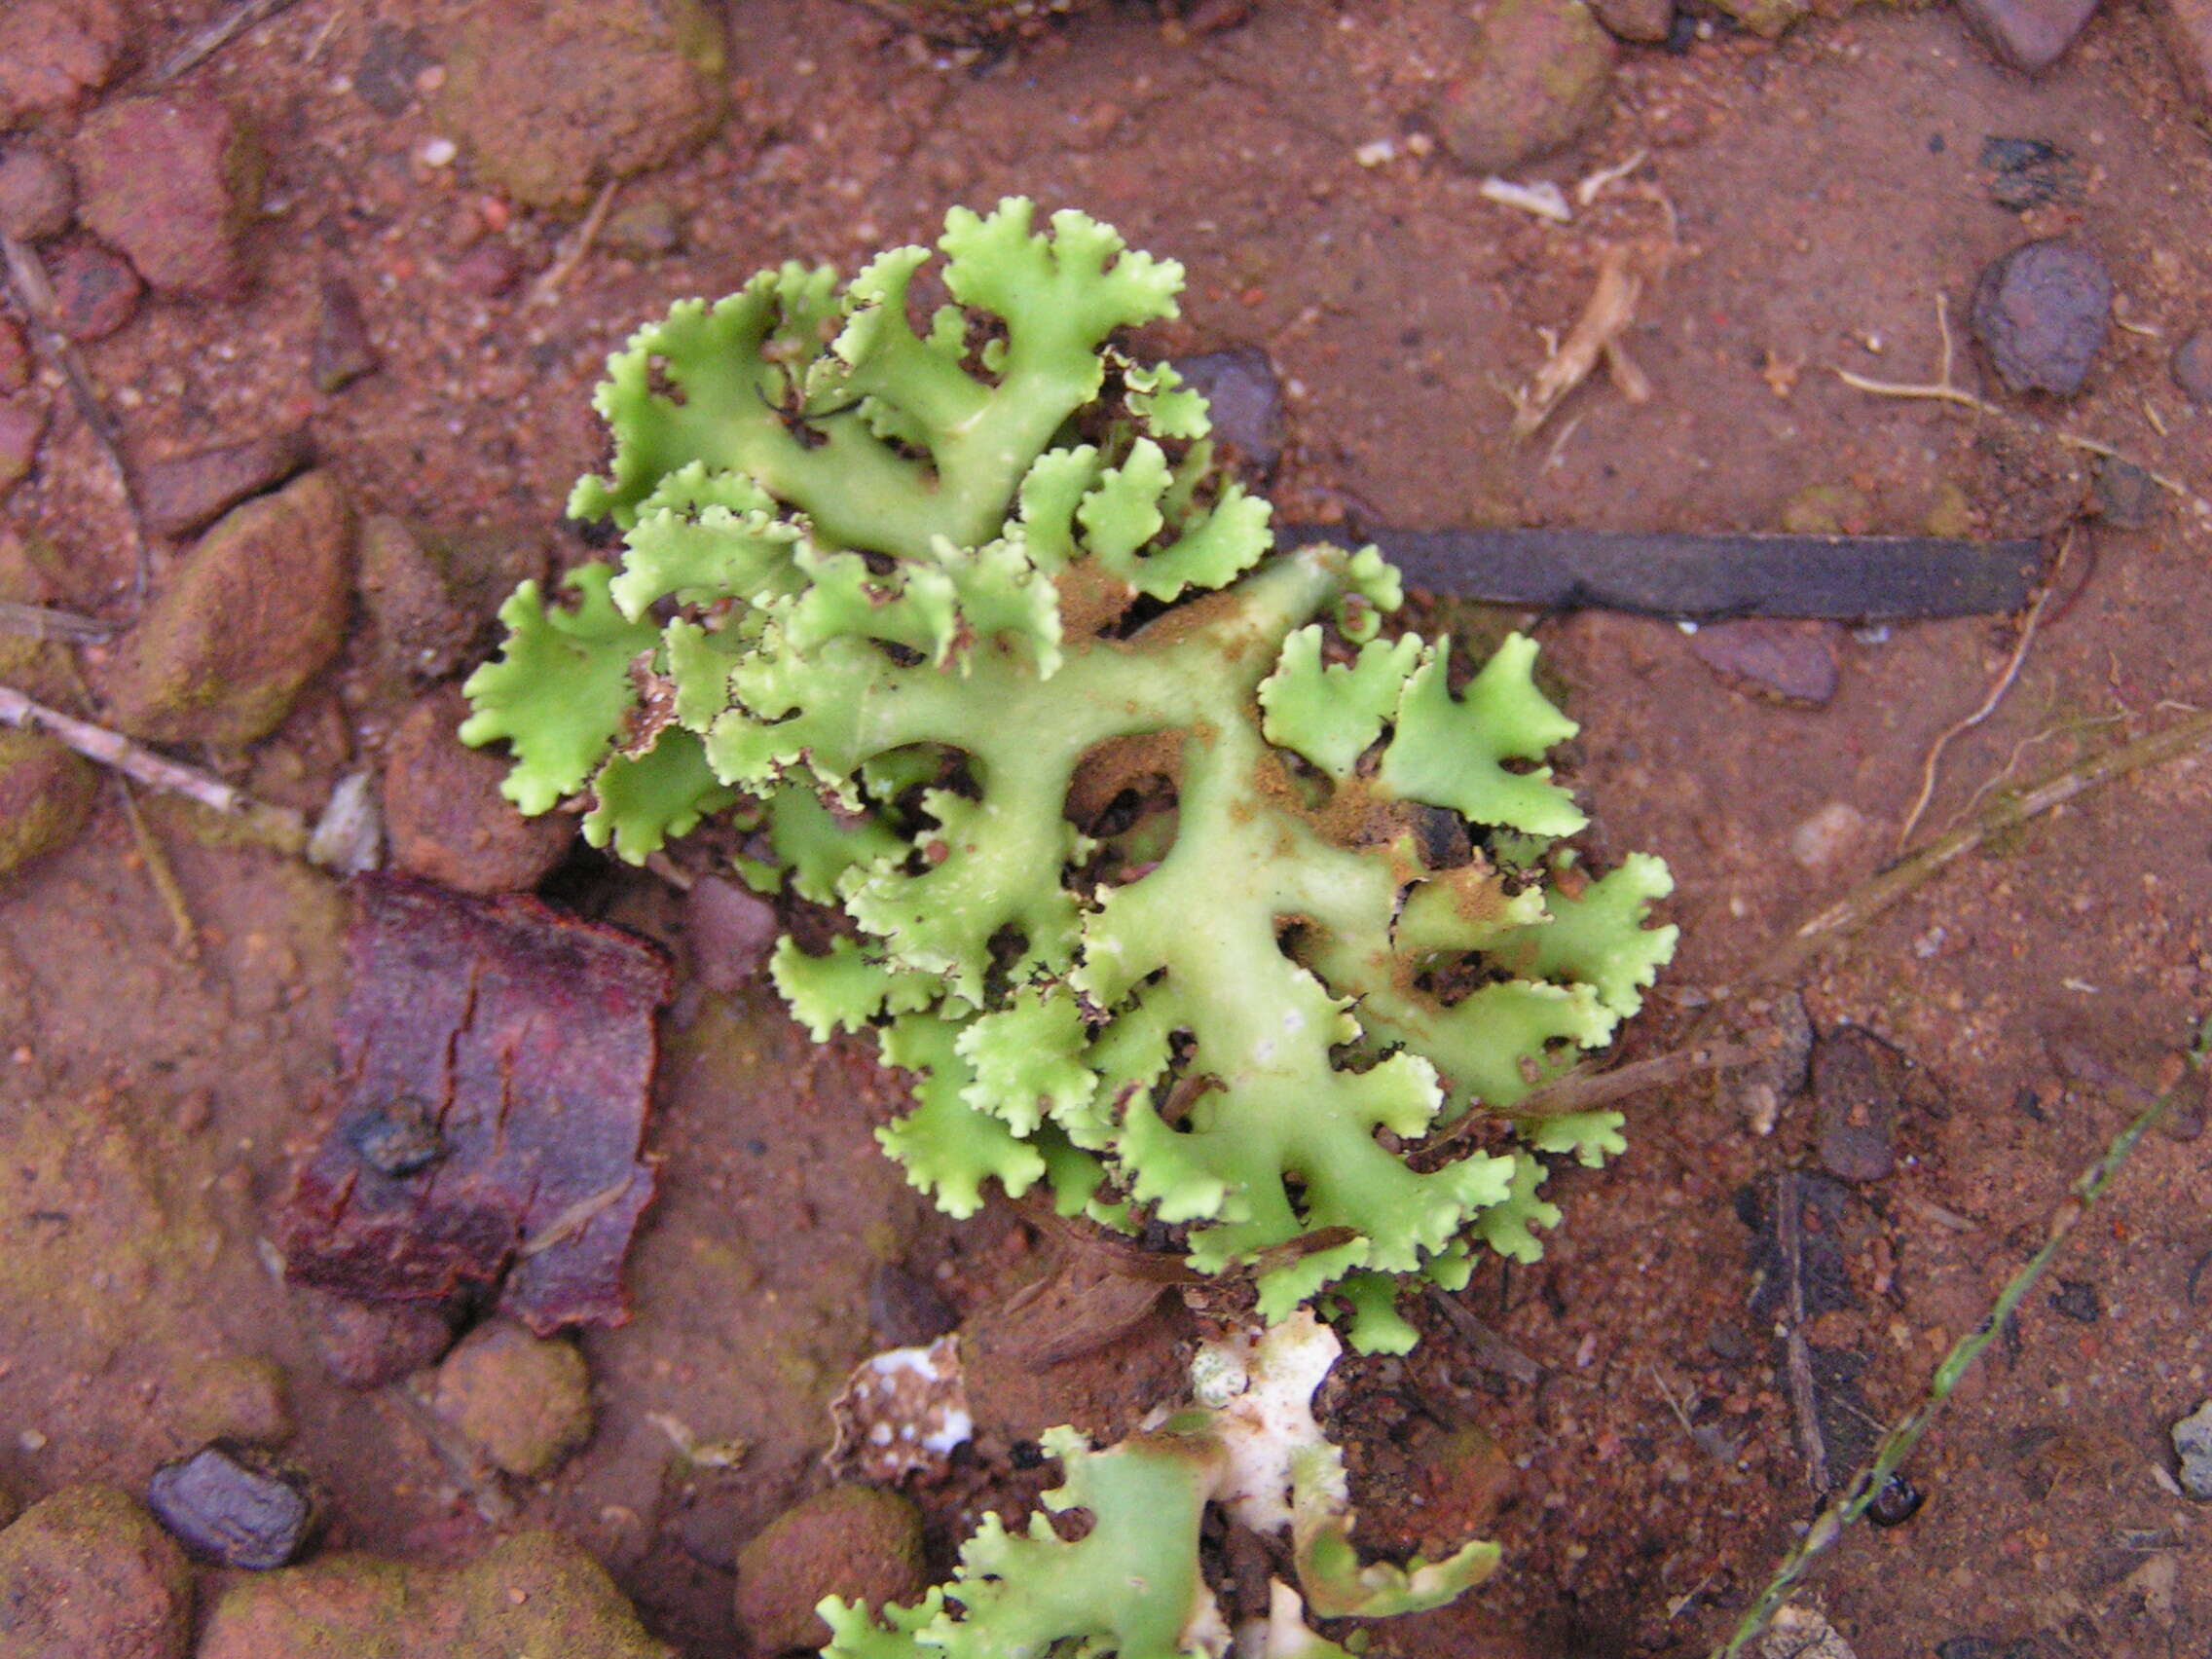 Image of Resurrection lichen